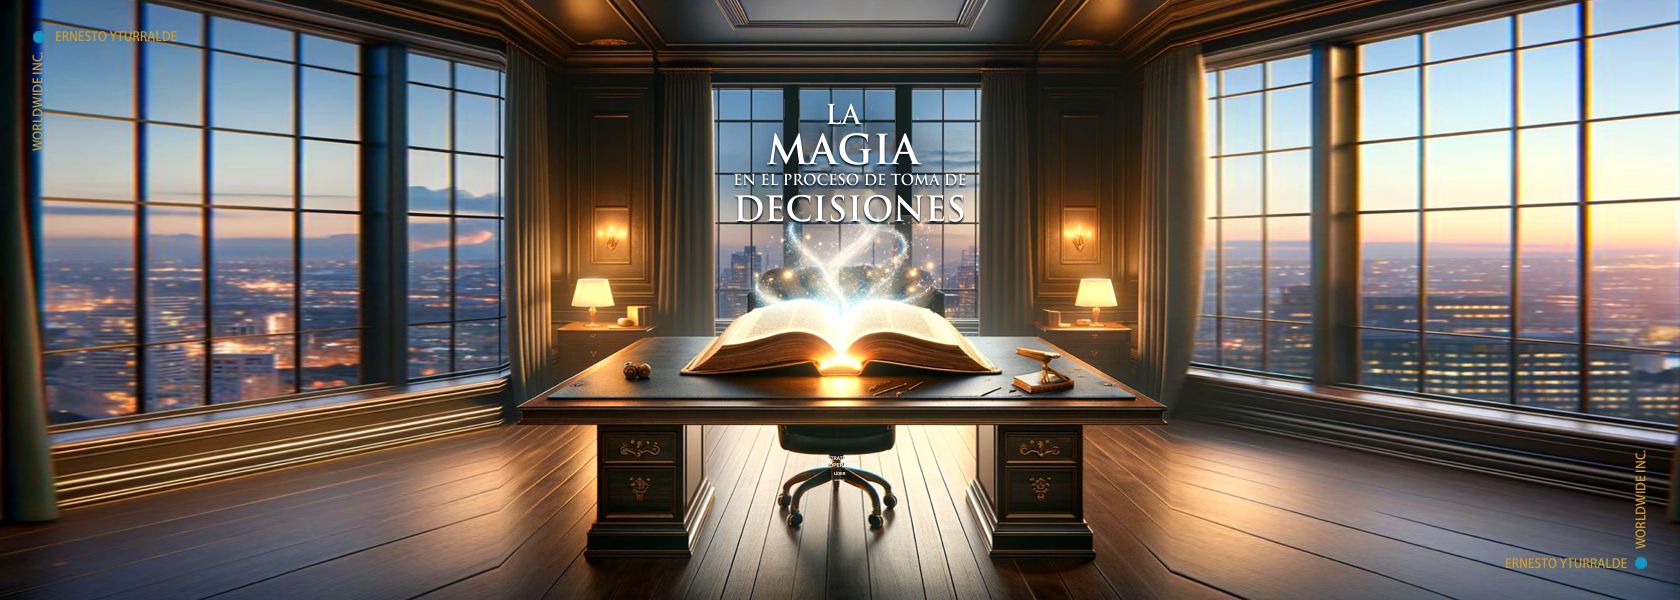 La magia en el proceso de toma de decisiones